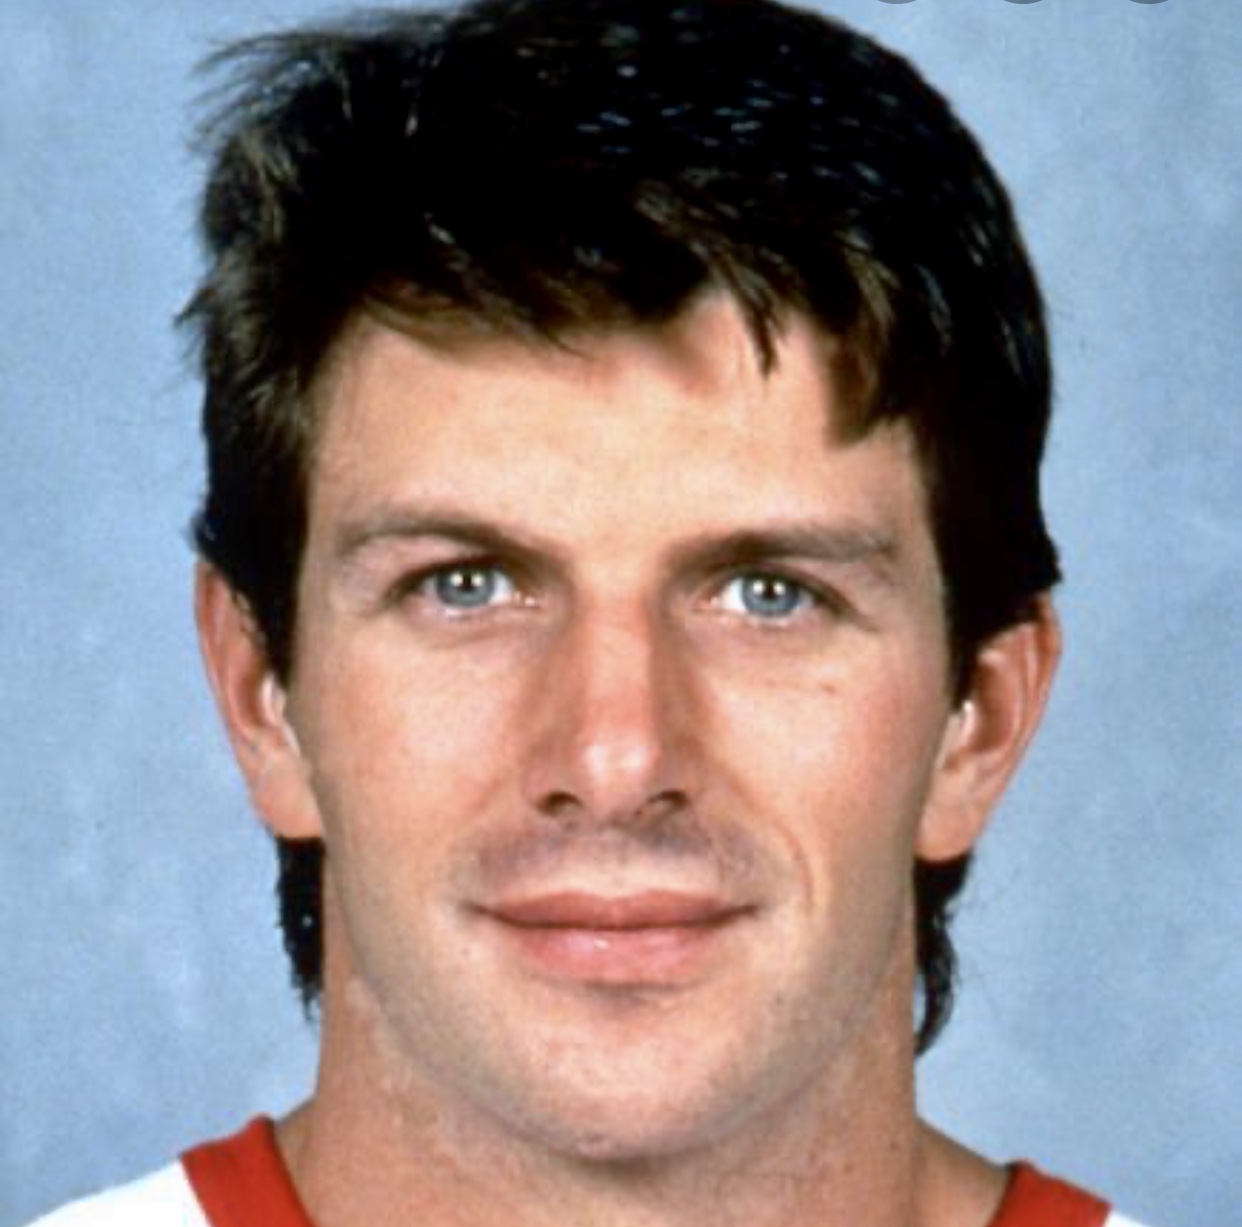 Une photo d’un joueur de hockey portant un maillot rouge, mettant en valeur l’essence du hockey.